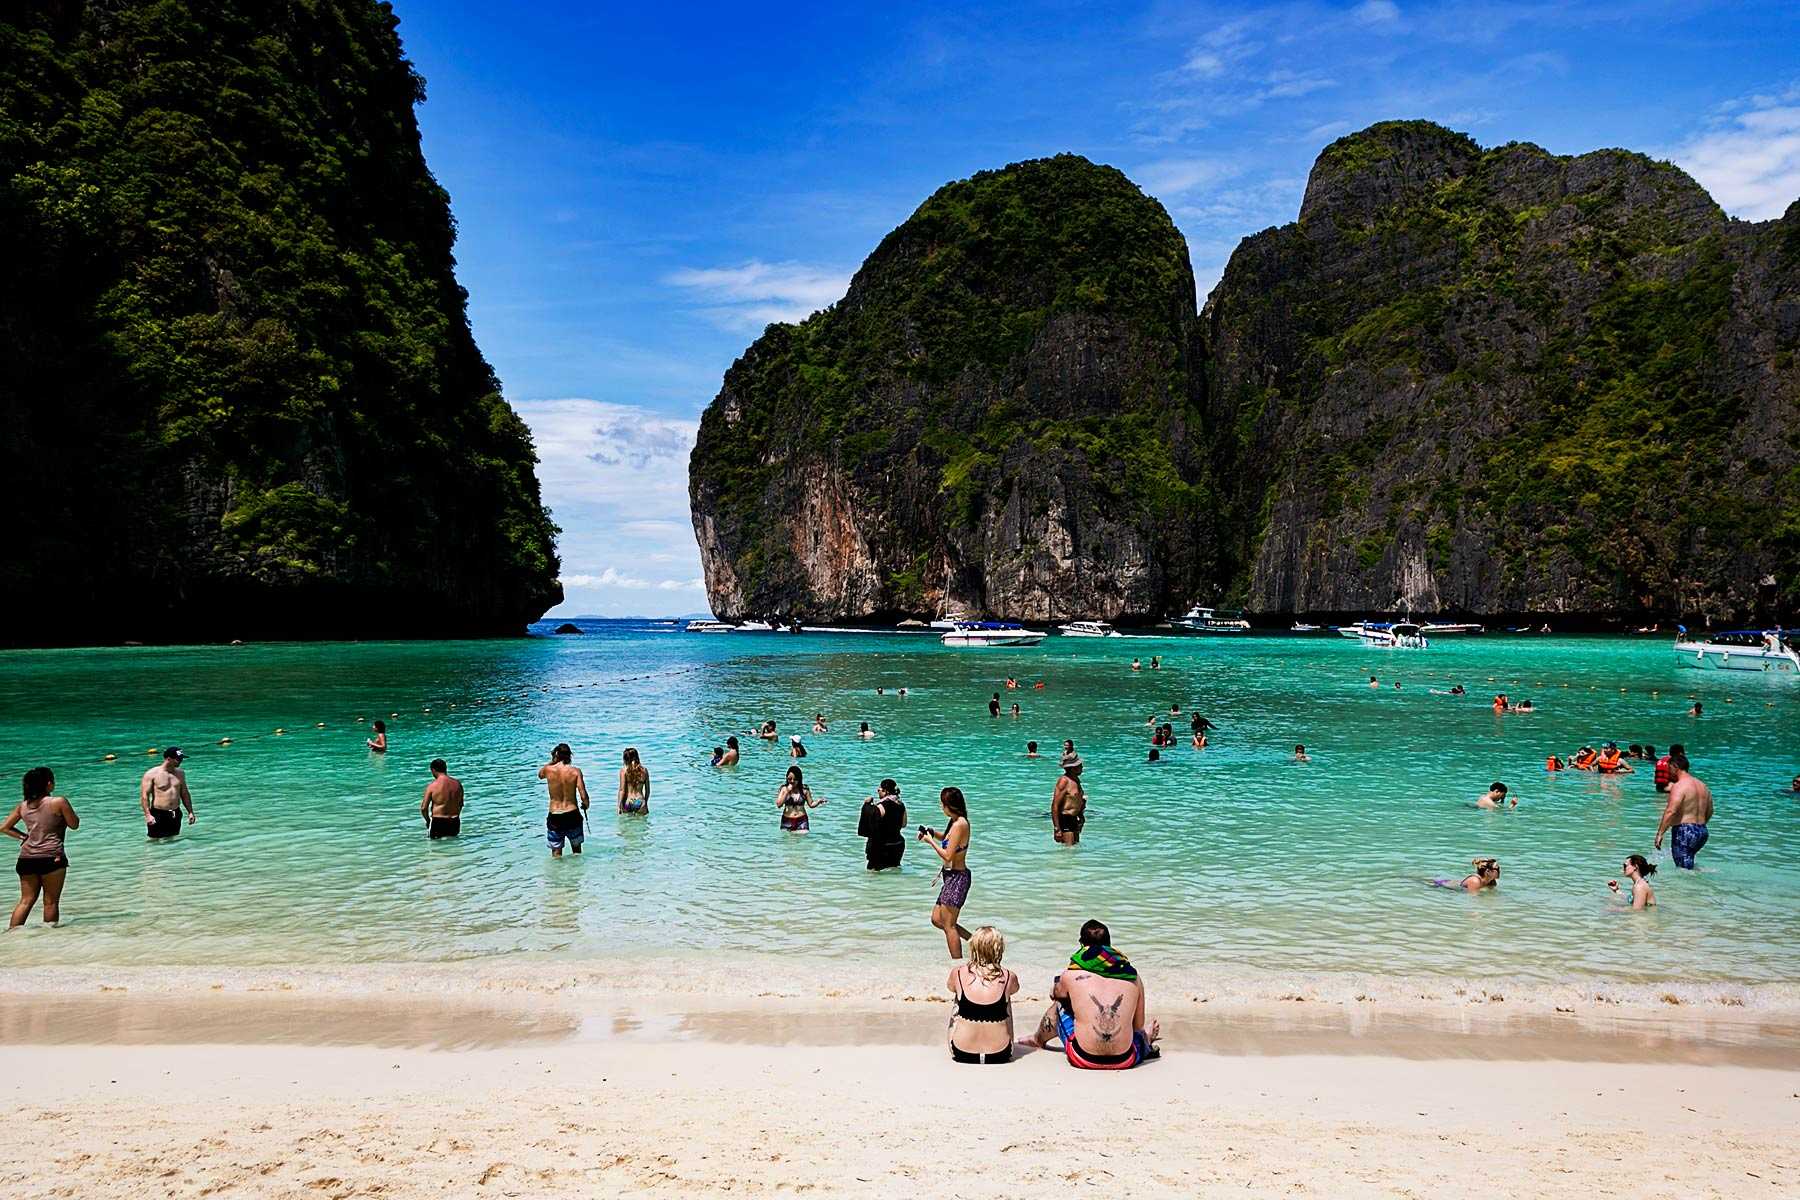 Отдых в таиланде, острова пхи пхи: как добраться, достопримечательности, пляжи, фото